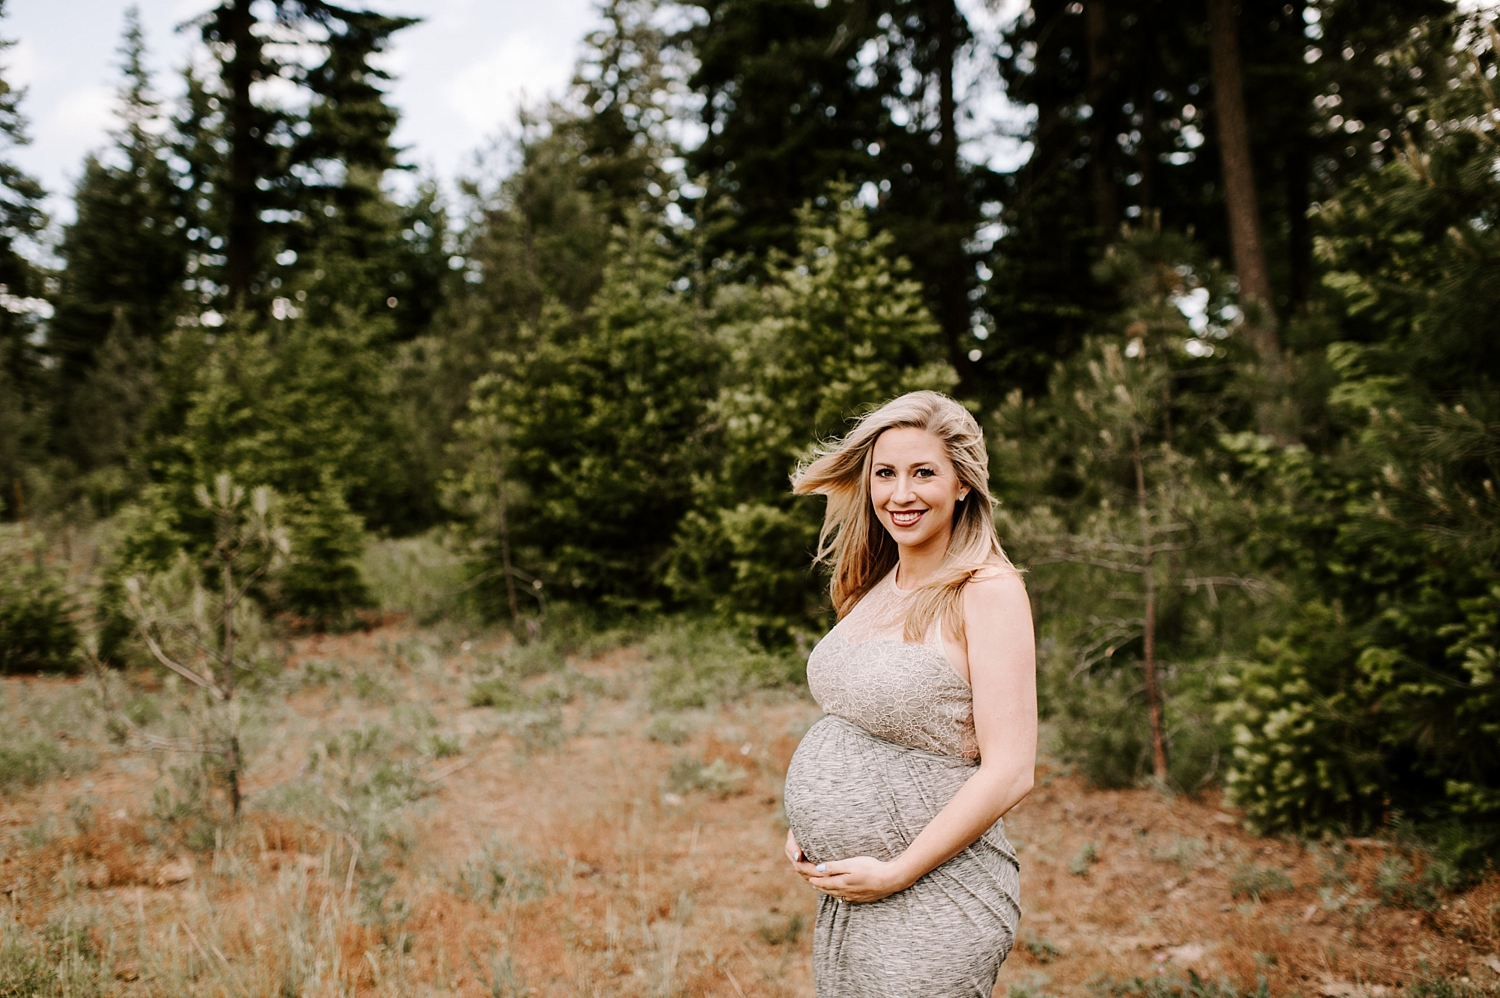 Suncadia Maternity Session | Meg Newton Photography